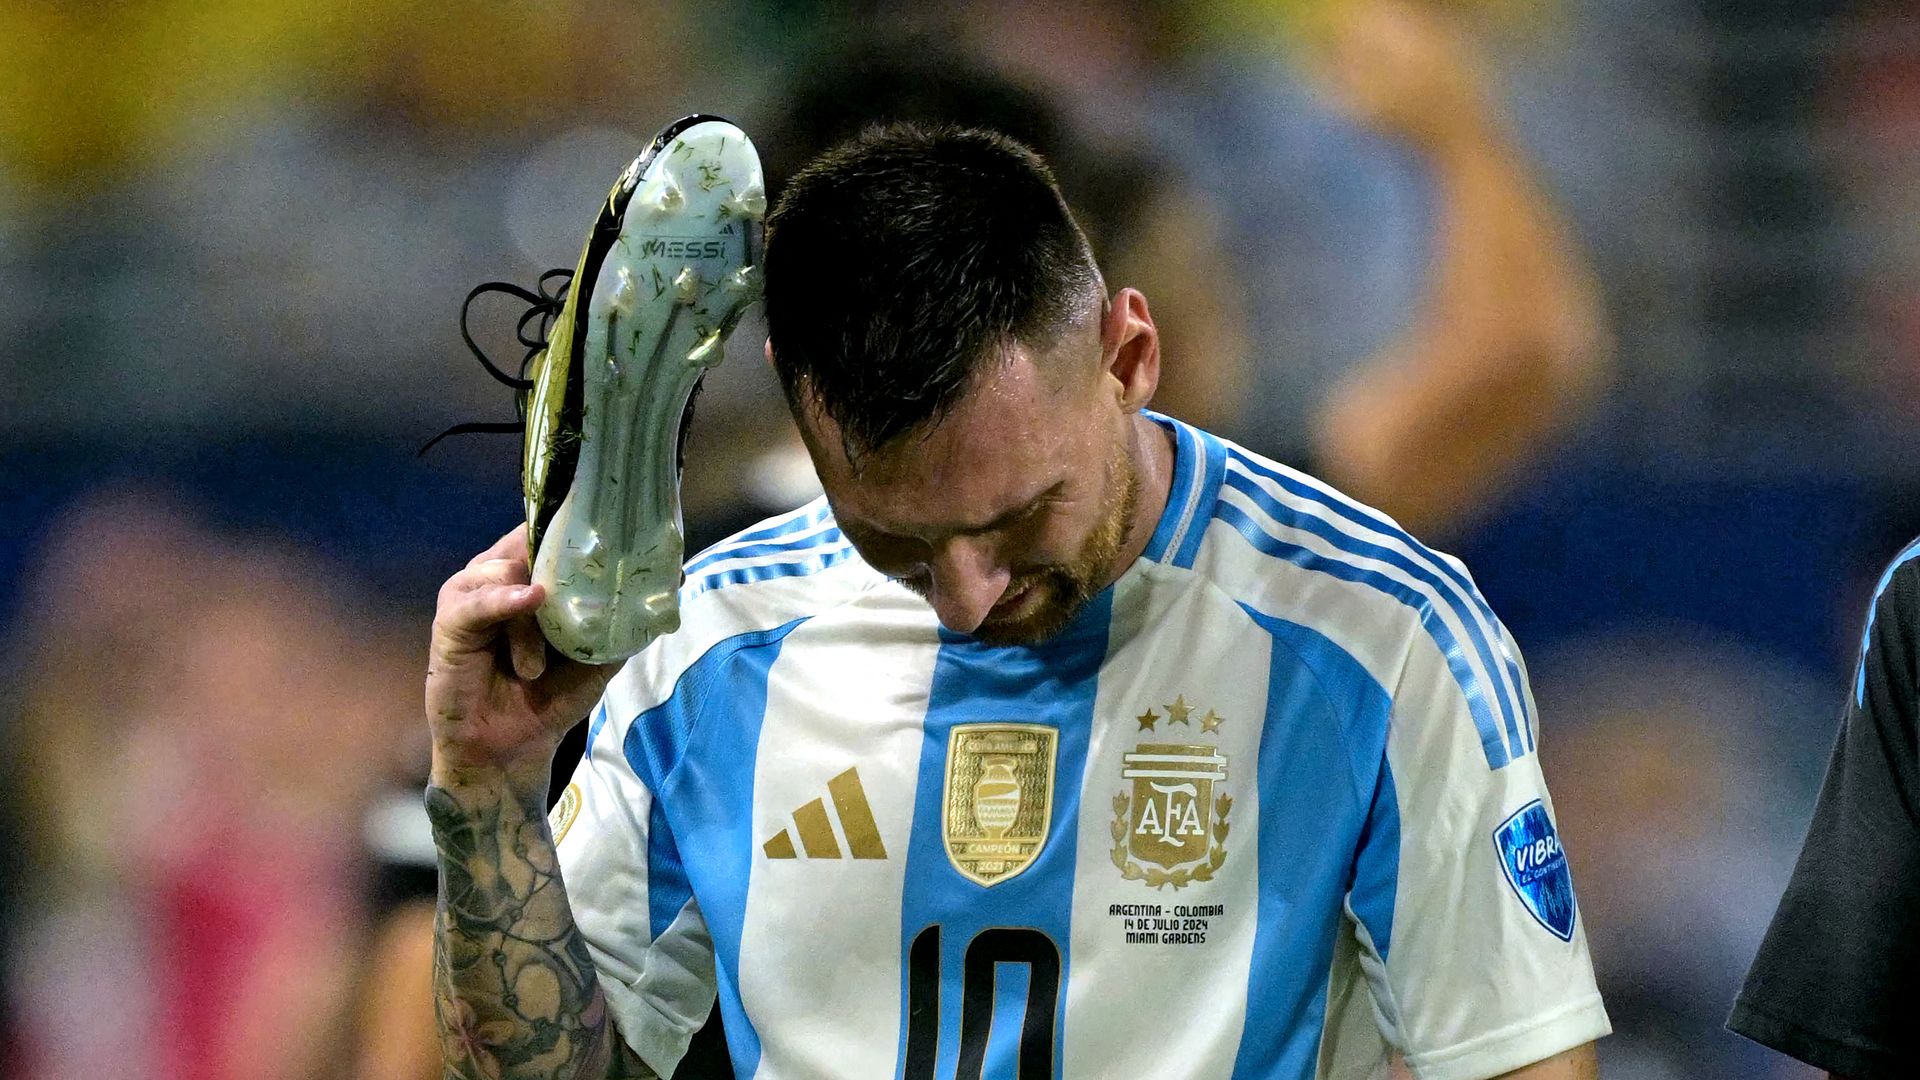 Las lágrimas de Messi en la Copa América conmueven al mundo